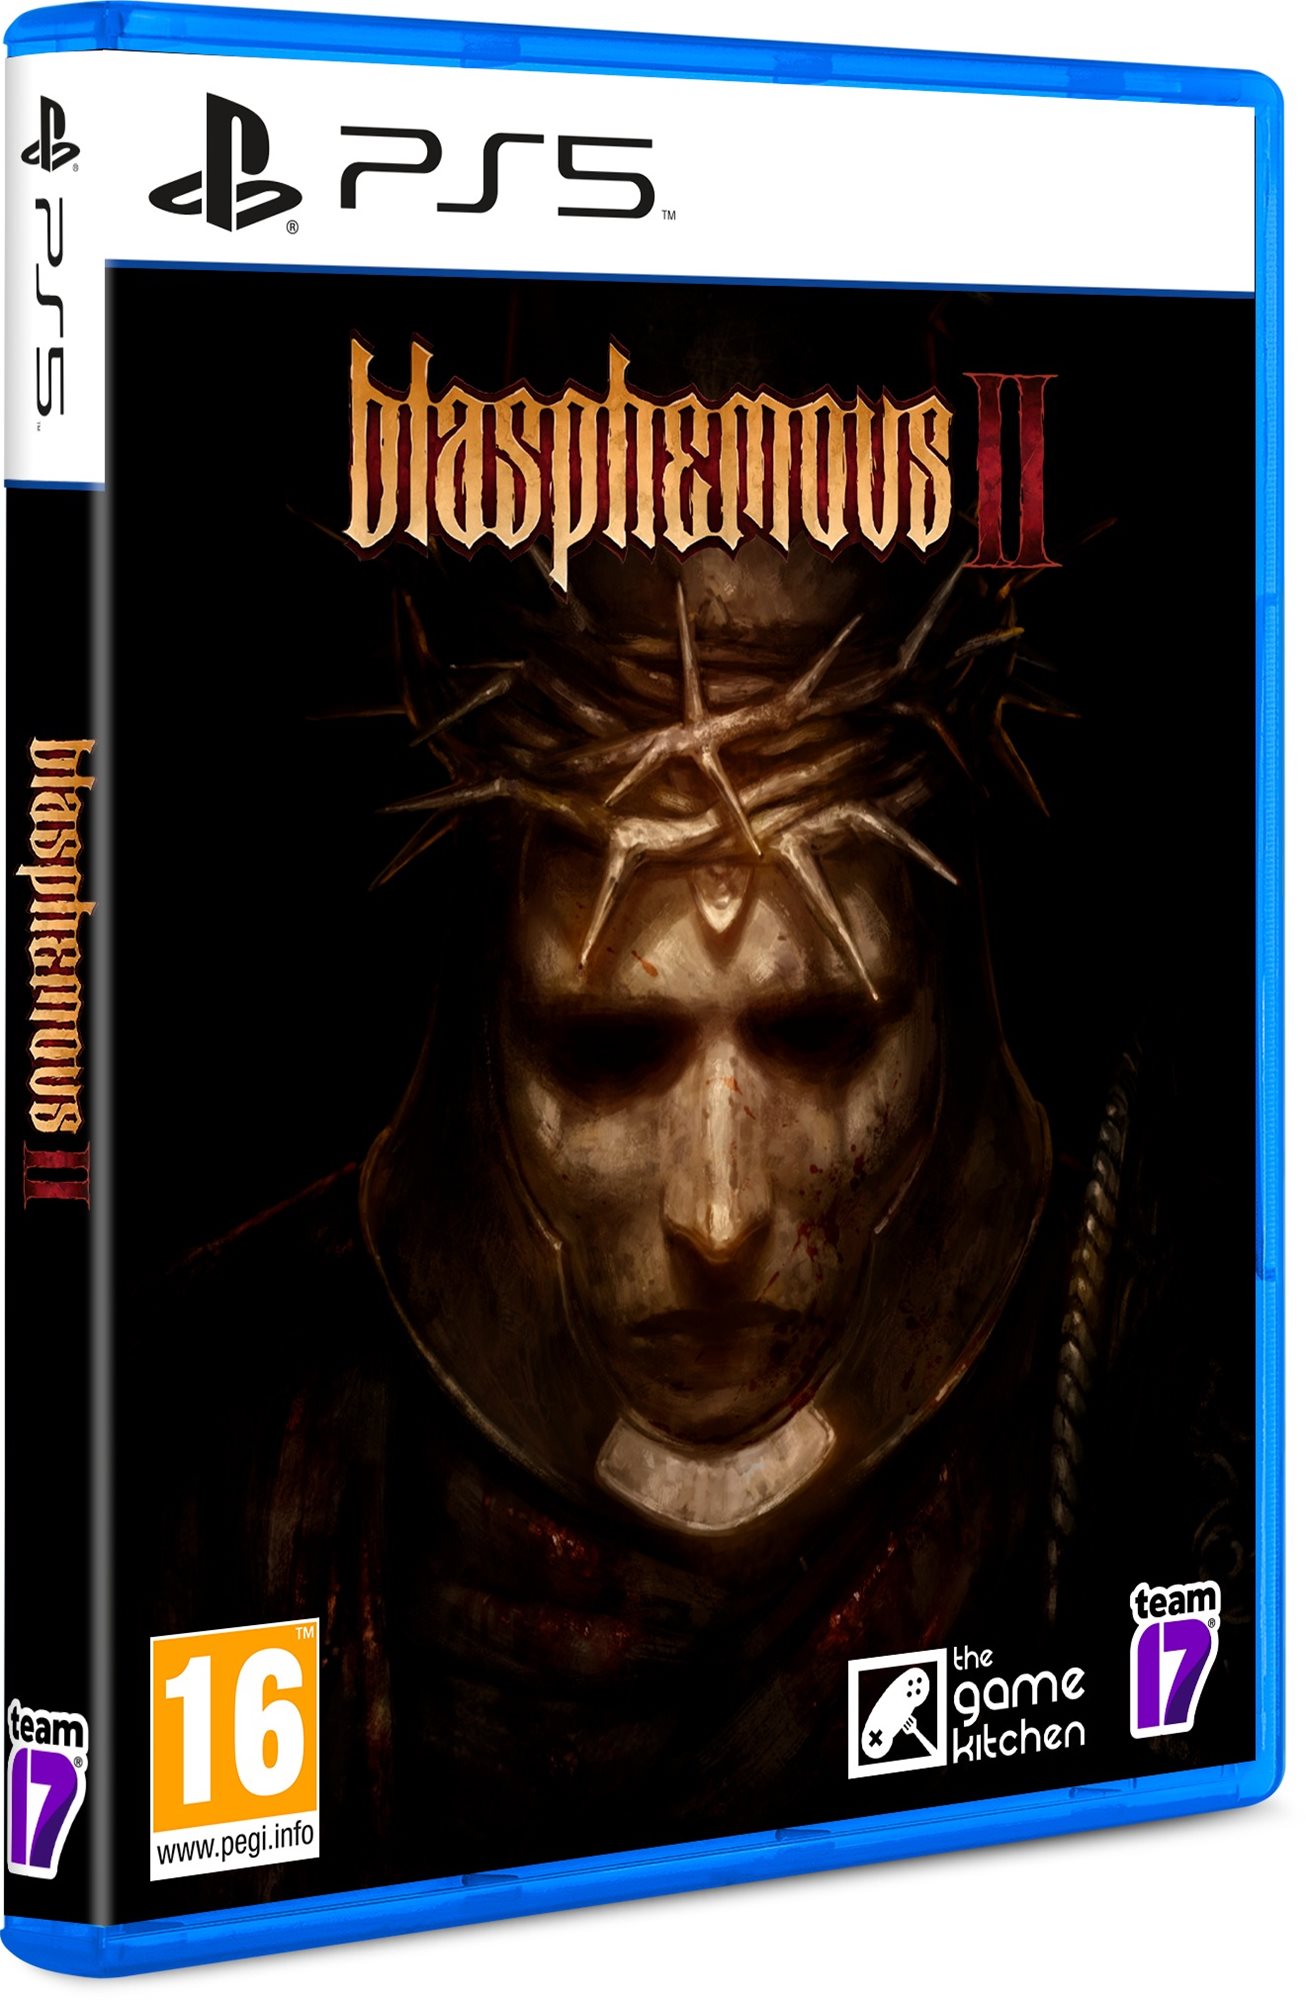 Konzol játék Blasphemous 2 - PS5